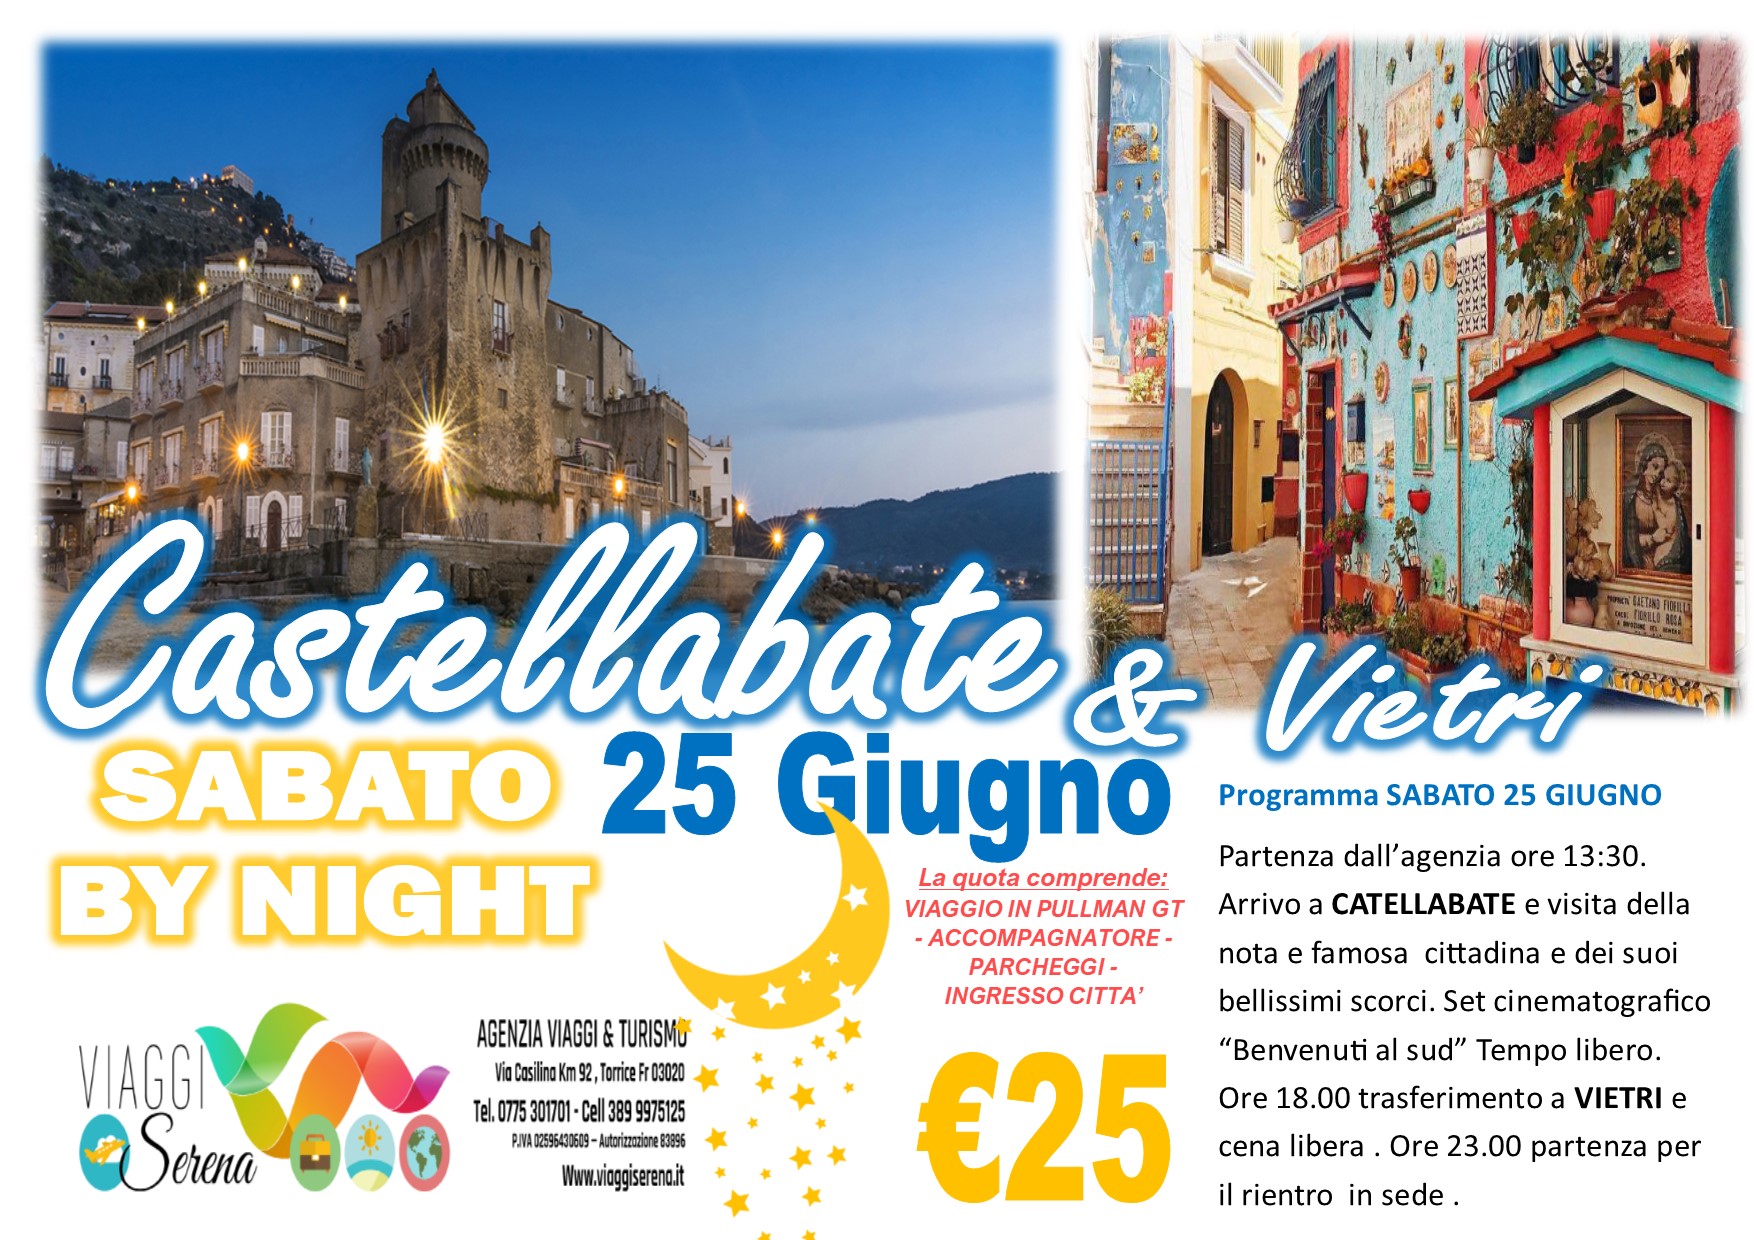 Viaggi di Gruppo: Castellabate & Vietri by night 25 Giugno €25,00